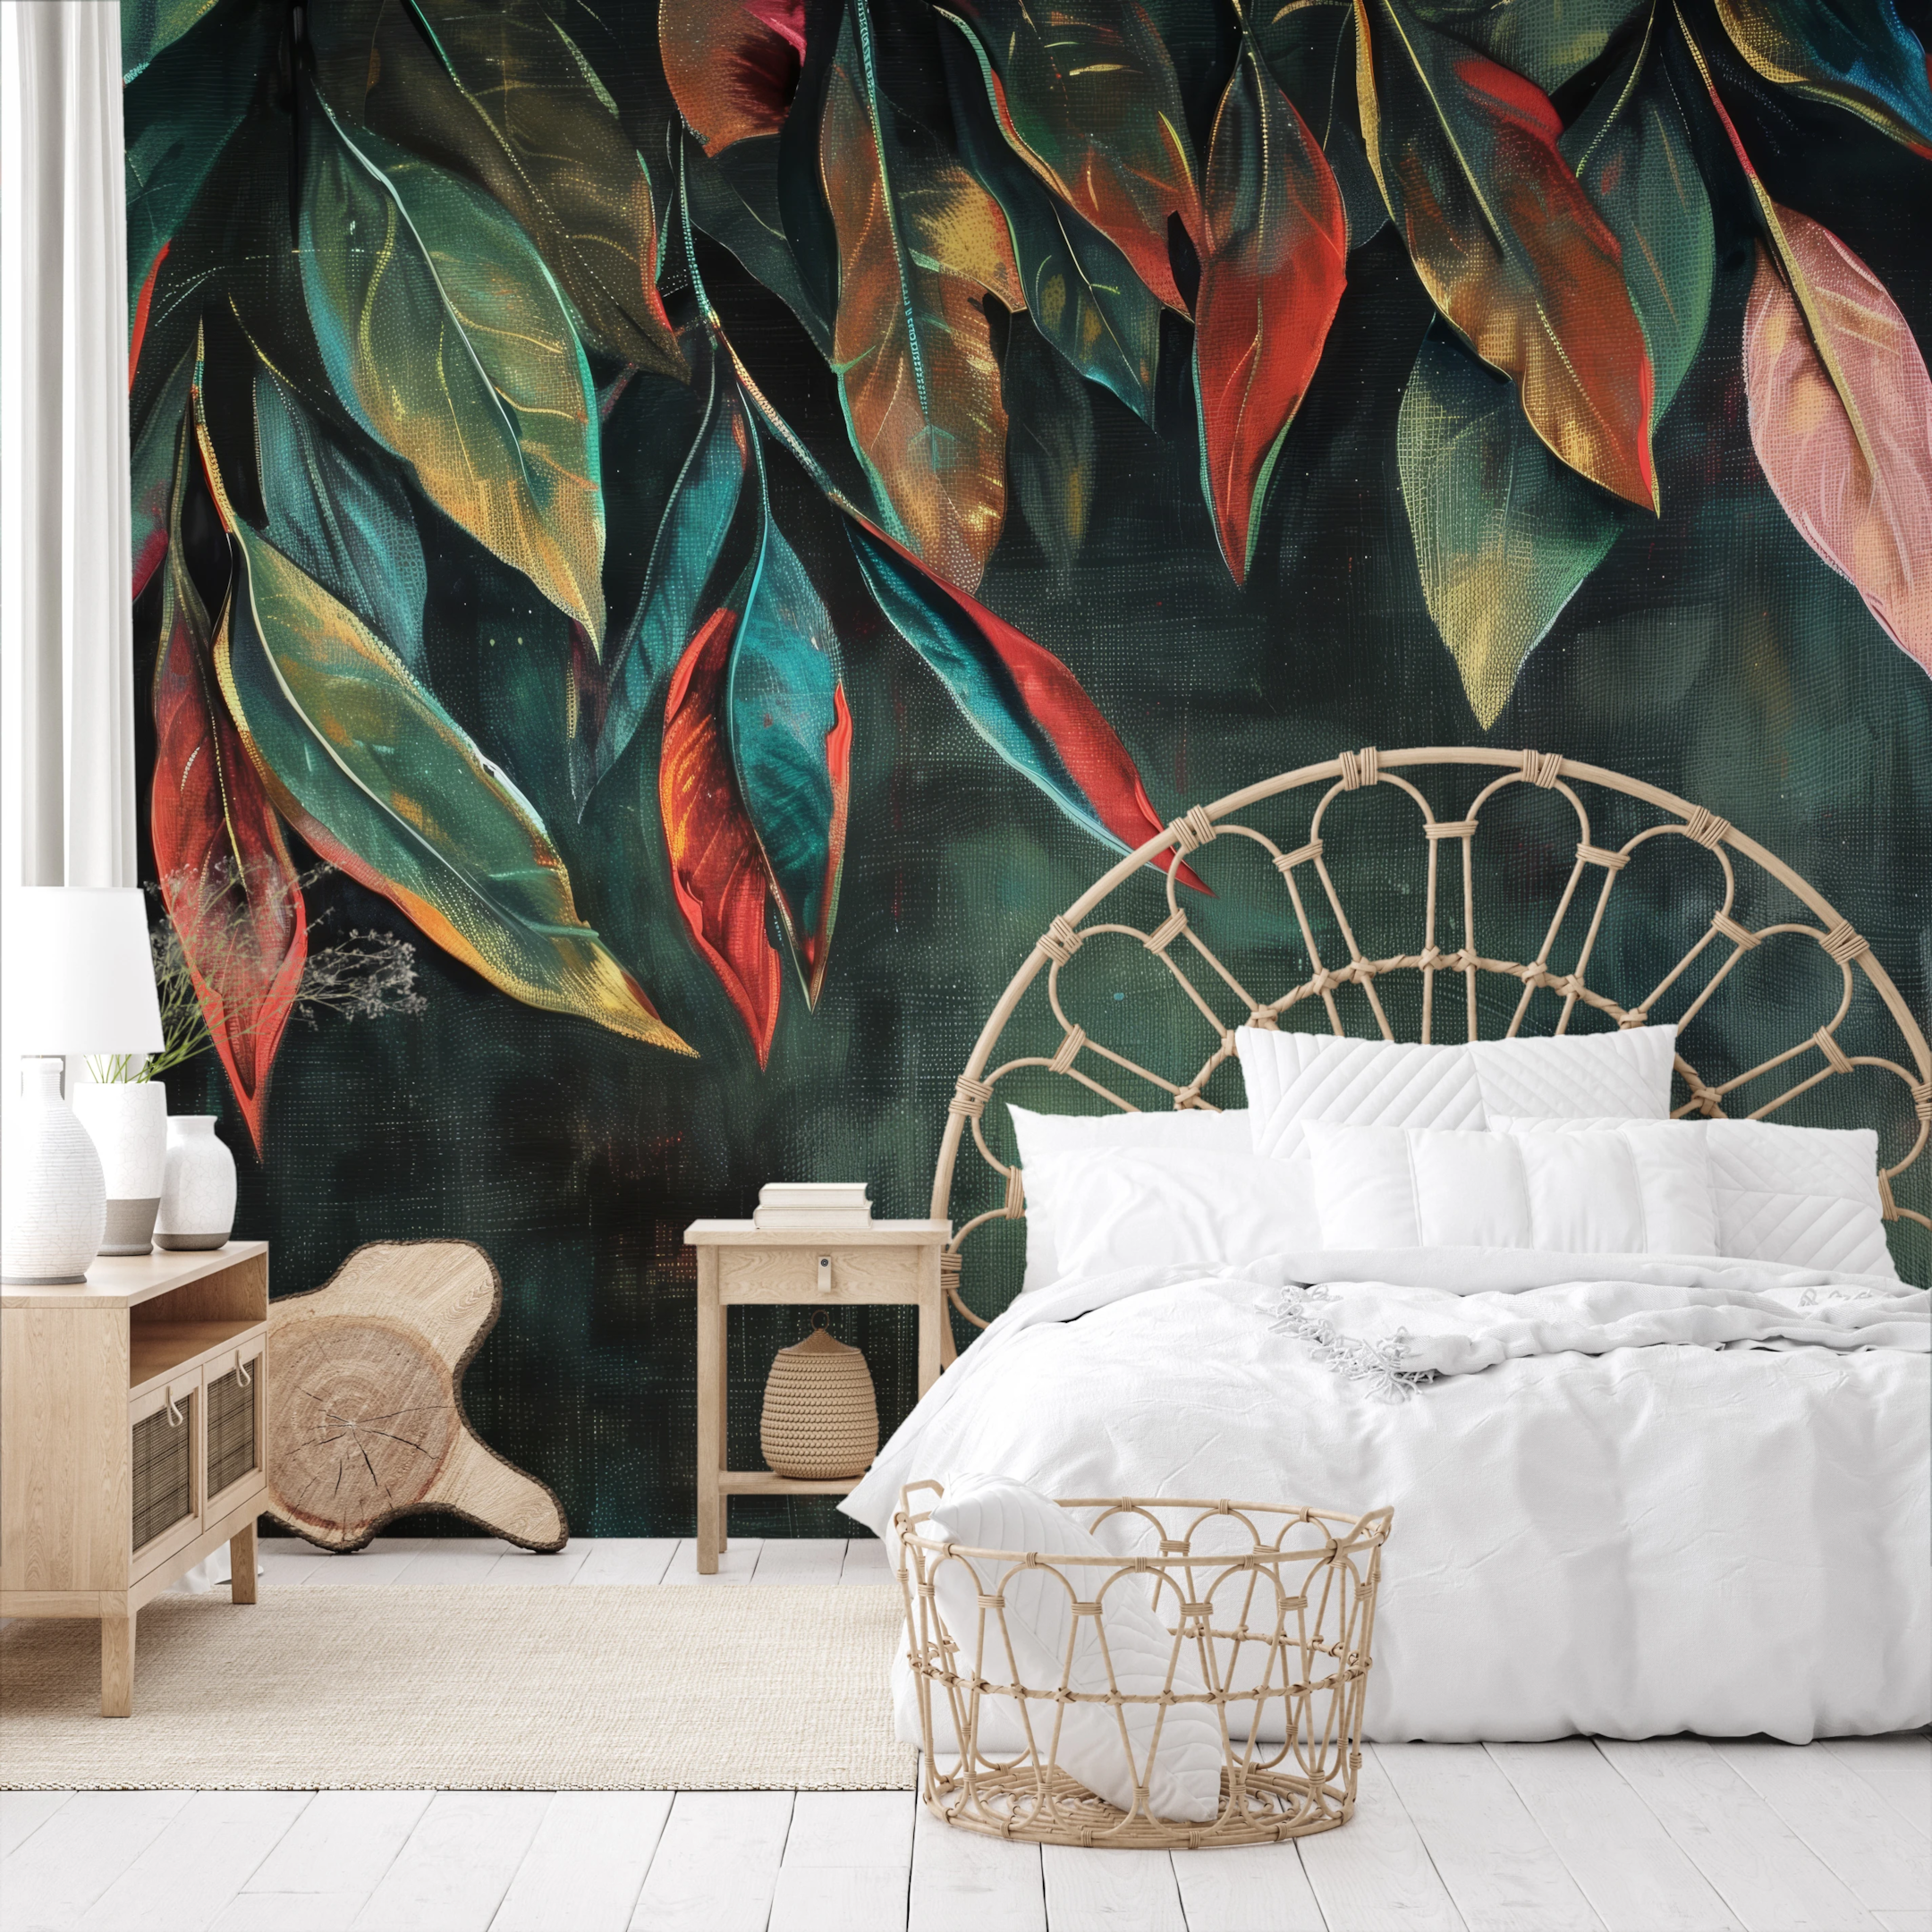 Eine dezente Fototapete mit Blättern in satten Dunkelgrün- und Marineblautönen, die für Harmonie und Frieden sorgt und sich hervorragend für Schlafzimmer oder elegante Wohnzimmer eignet.